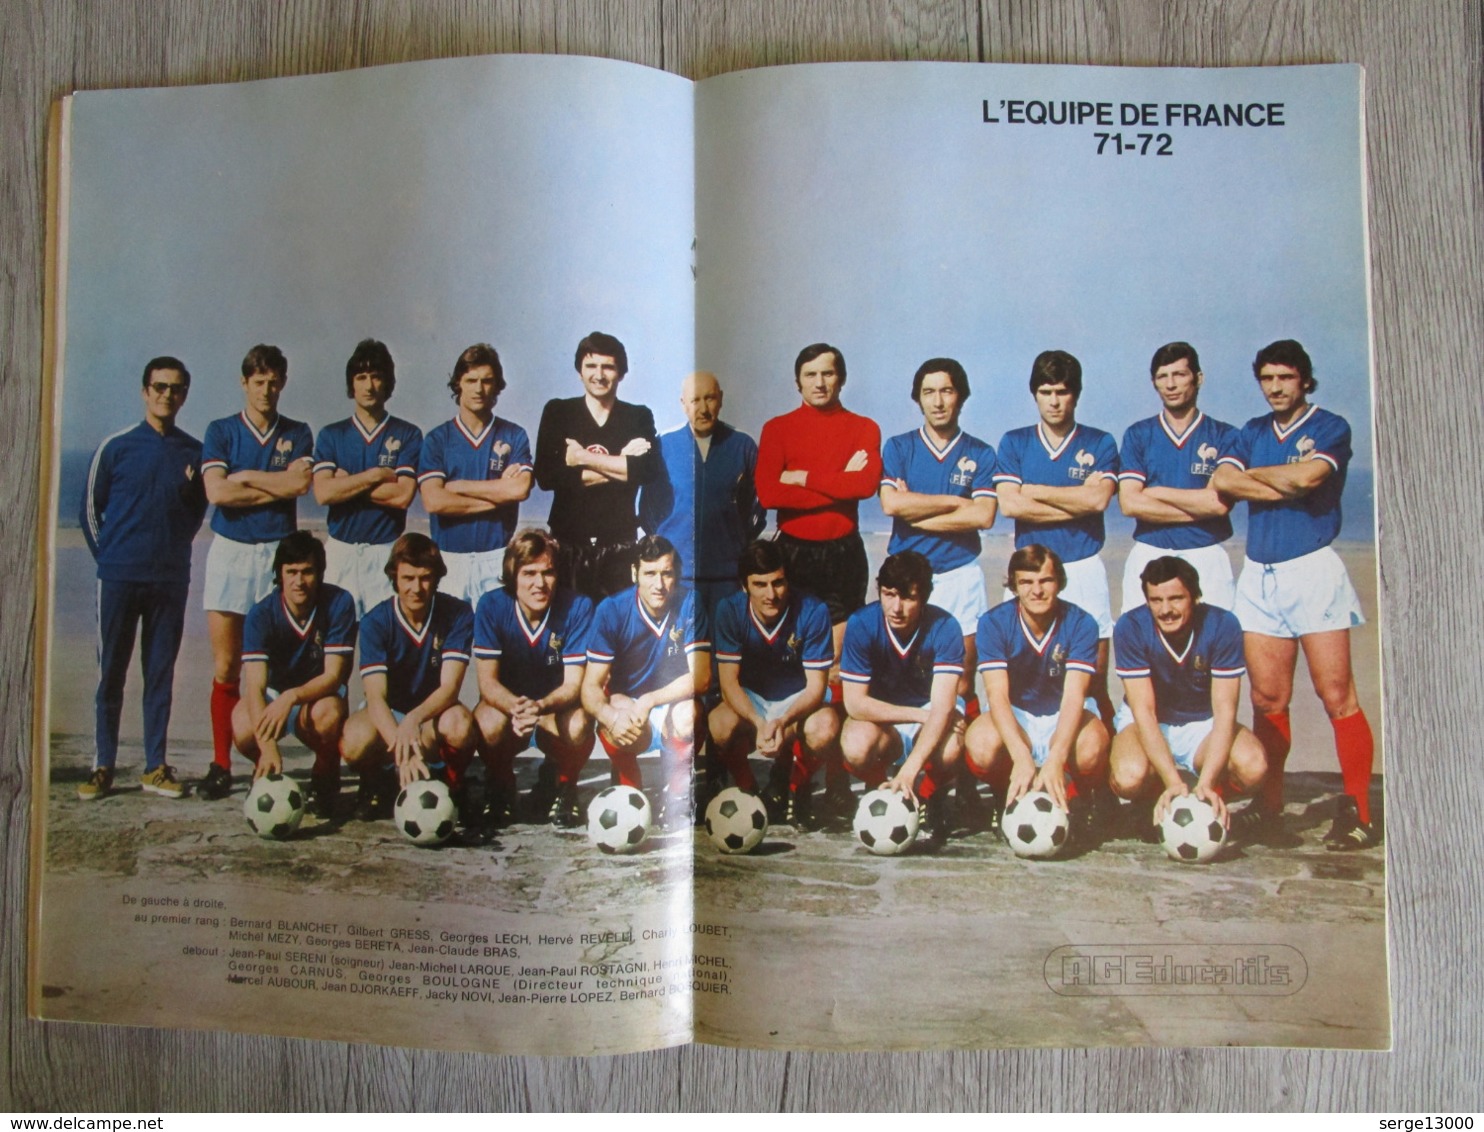 Album vignettes Football en action Championnat de France 1971 1972 AGE ( pas Panini ) avec poster équipe de France